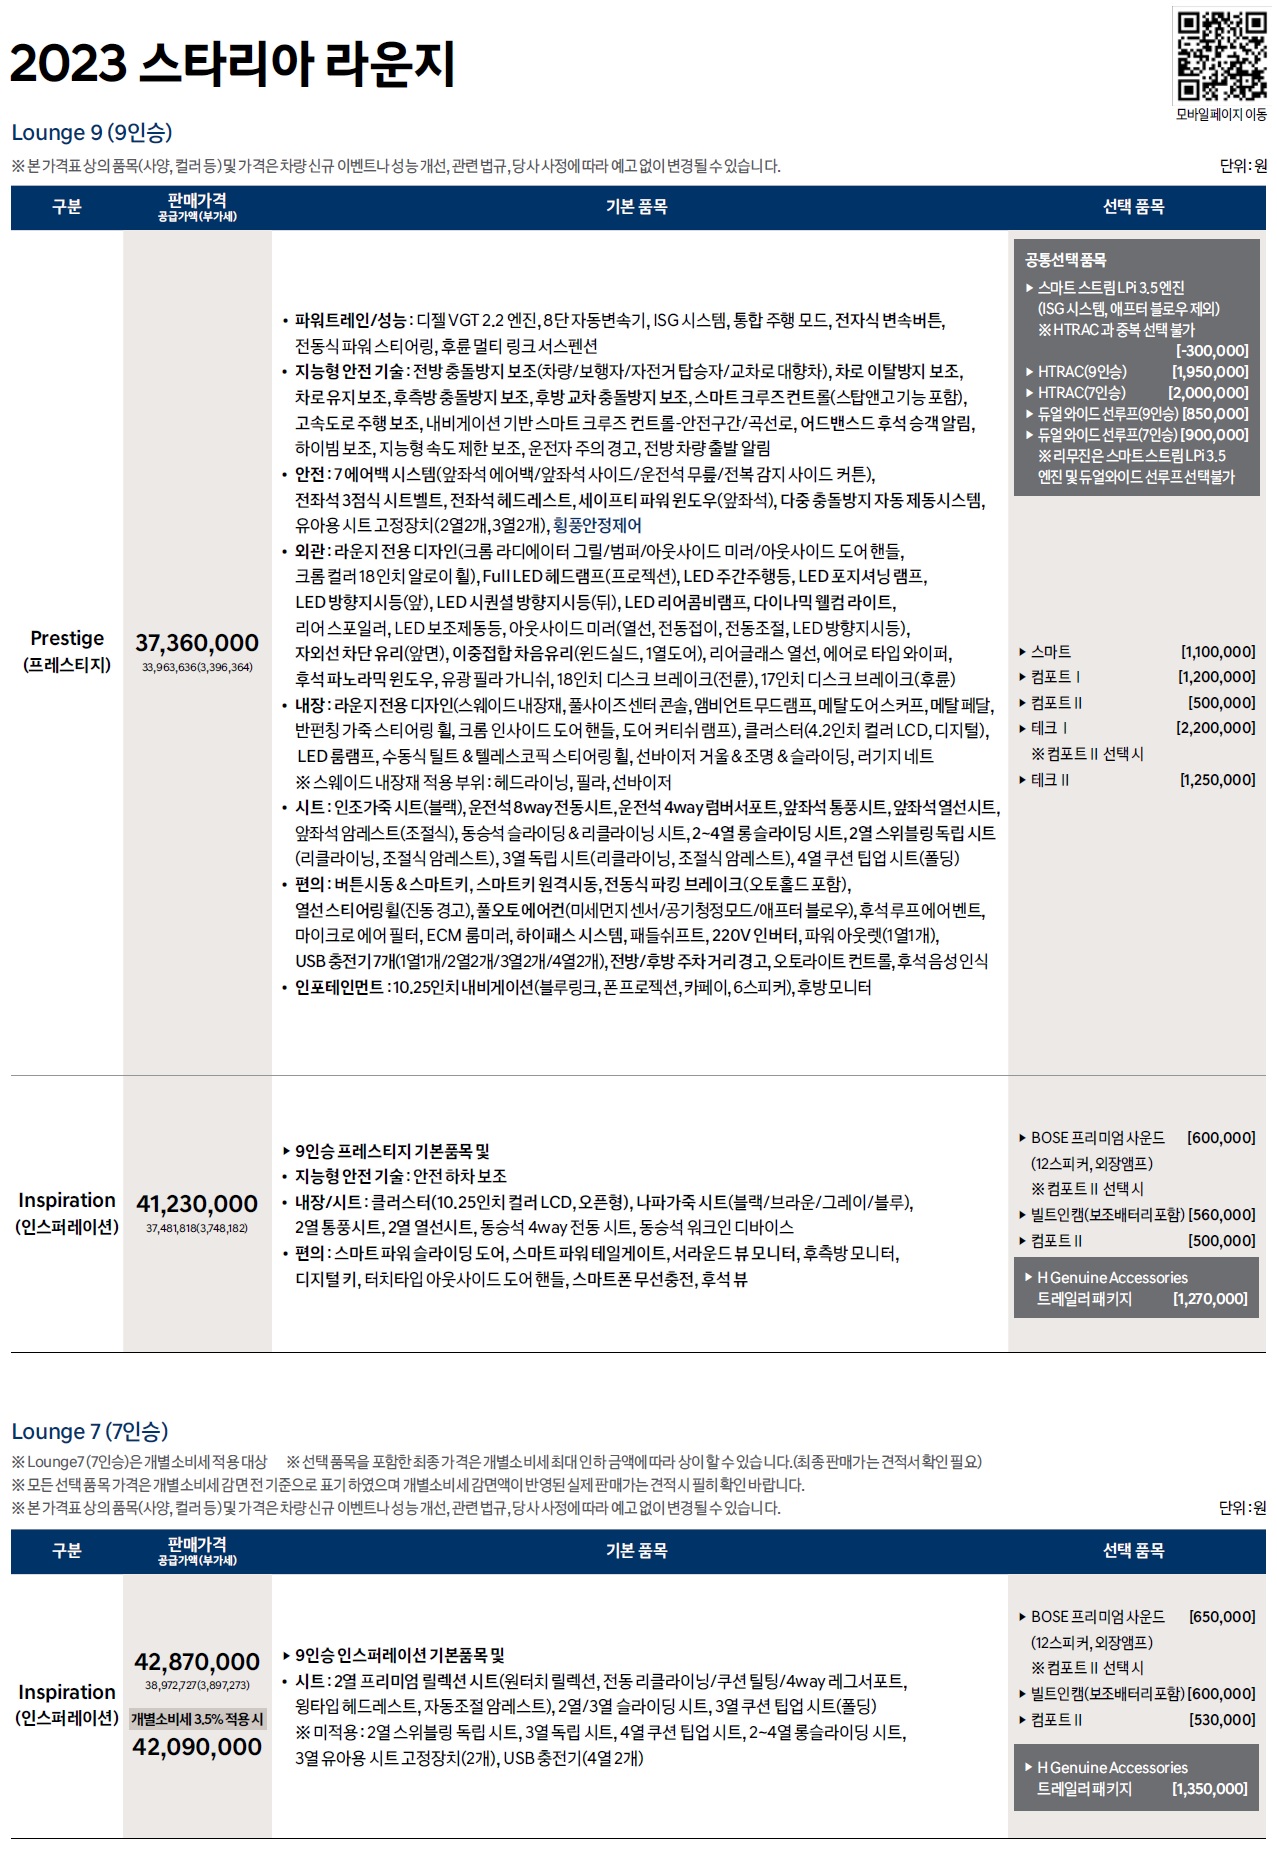 스타리아 라운지 가격표 - 2022년 08월 -1.jpg